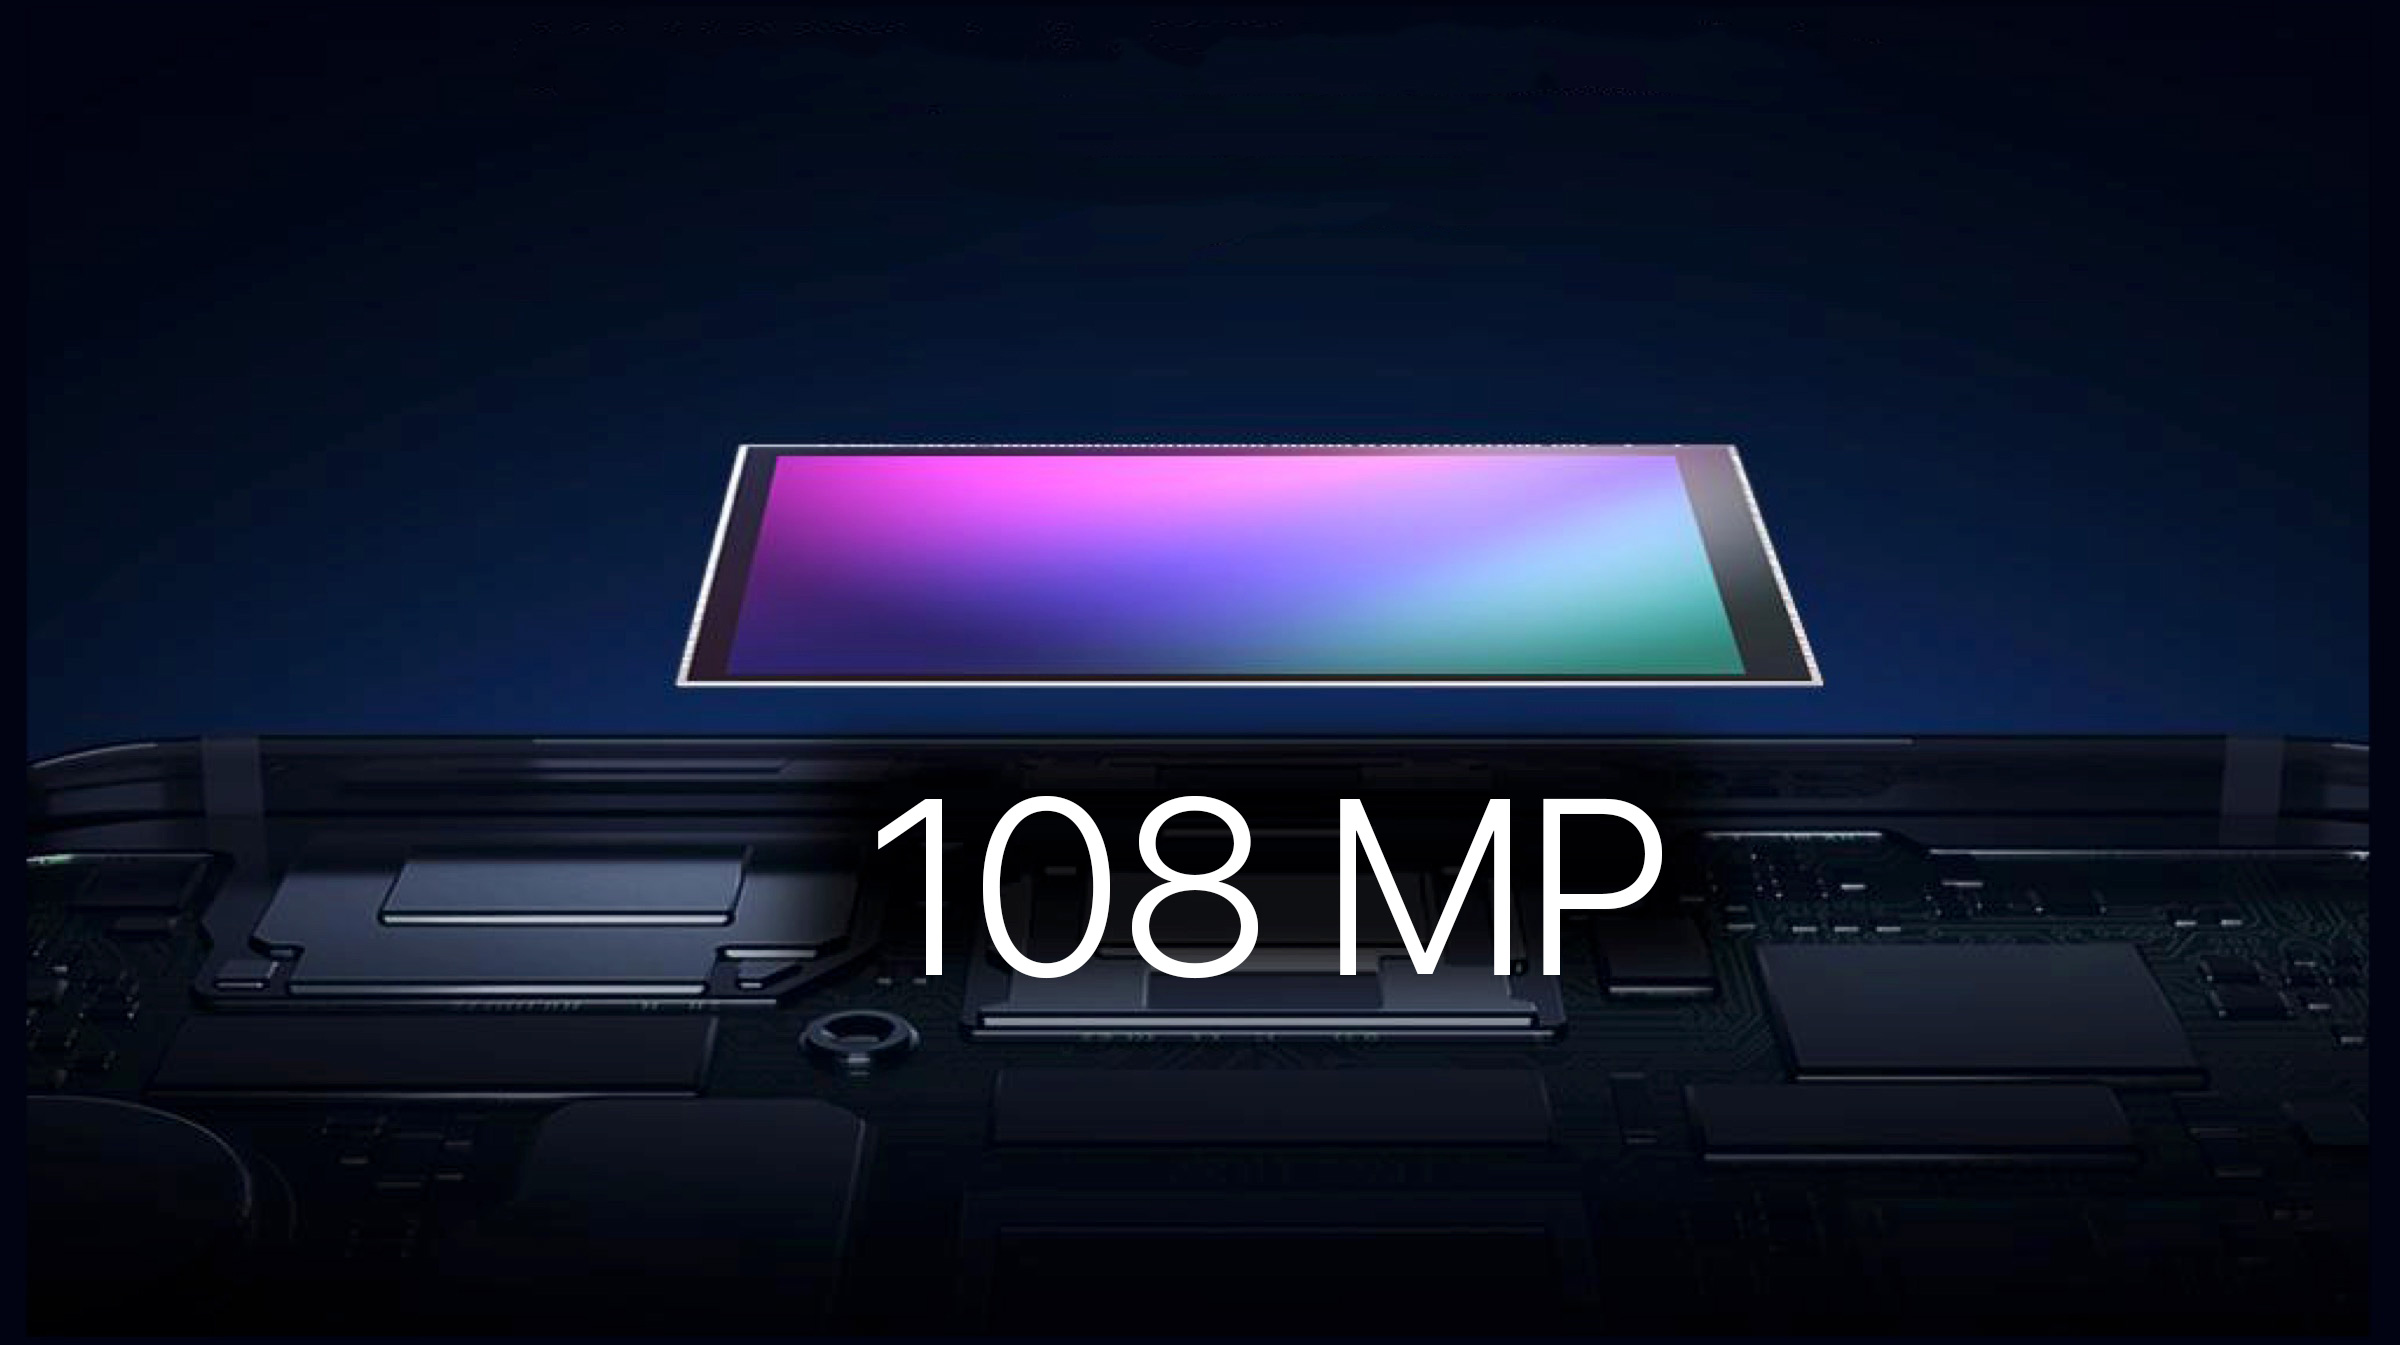 Xiaomi chuẩn bị ra mắt 4 chiếc điện thoại dùng cảm biến ảnh 108MP?